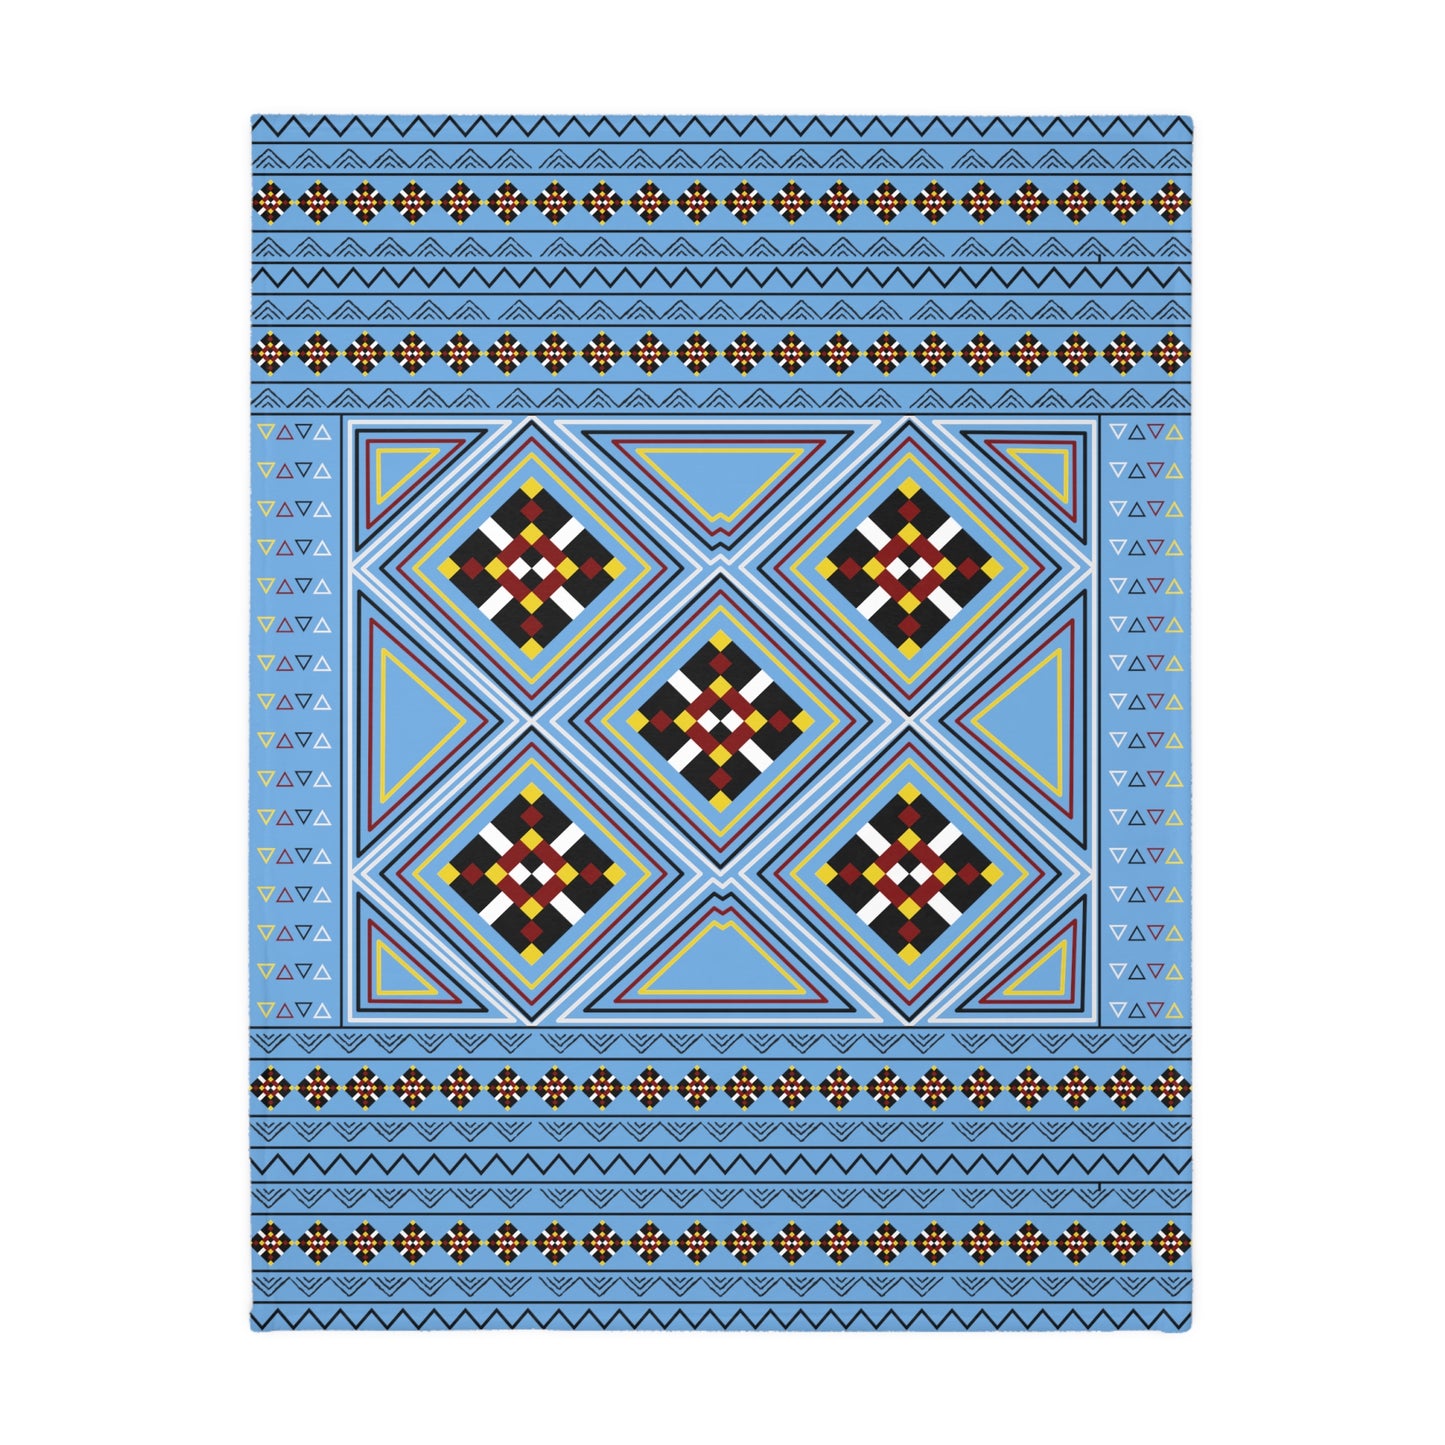 Blue Velveteen Microfiber Blanket (Two-sided print)